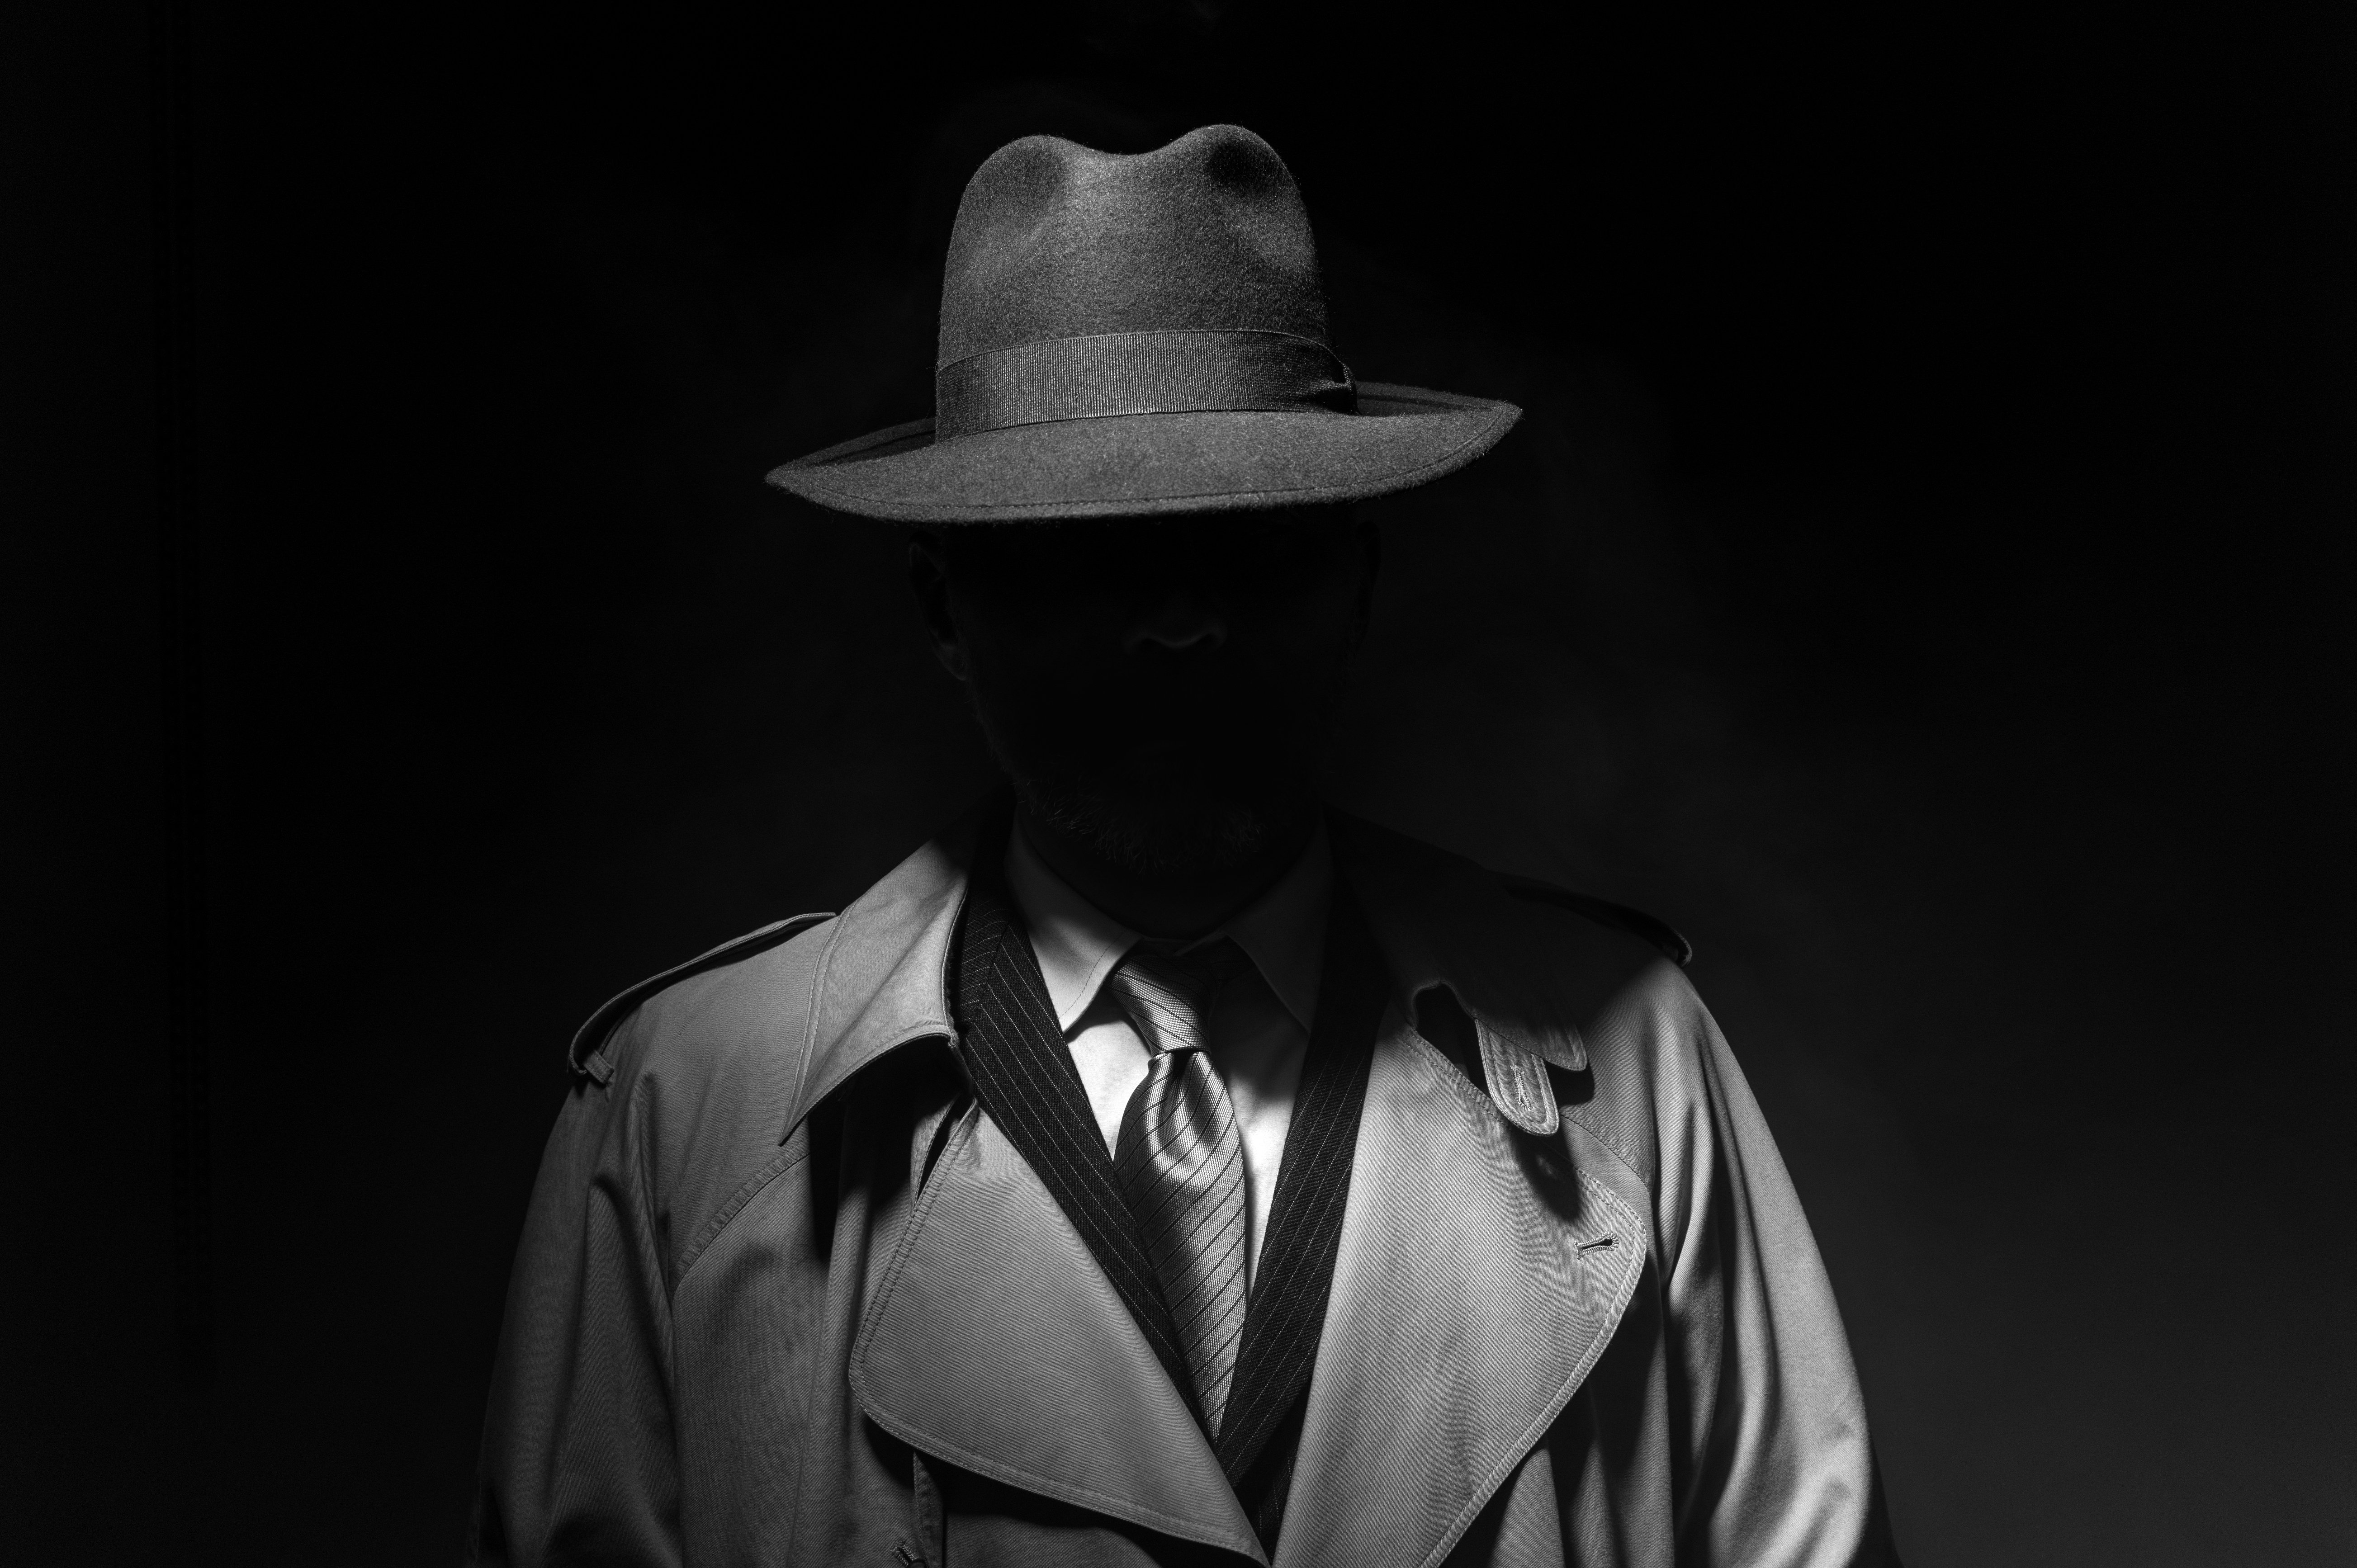 Ein Detektiv steht im Schatten. | Quelle: Shutterstock